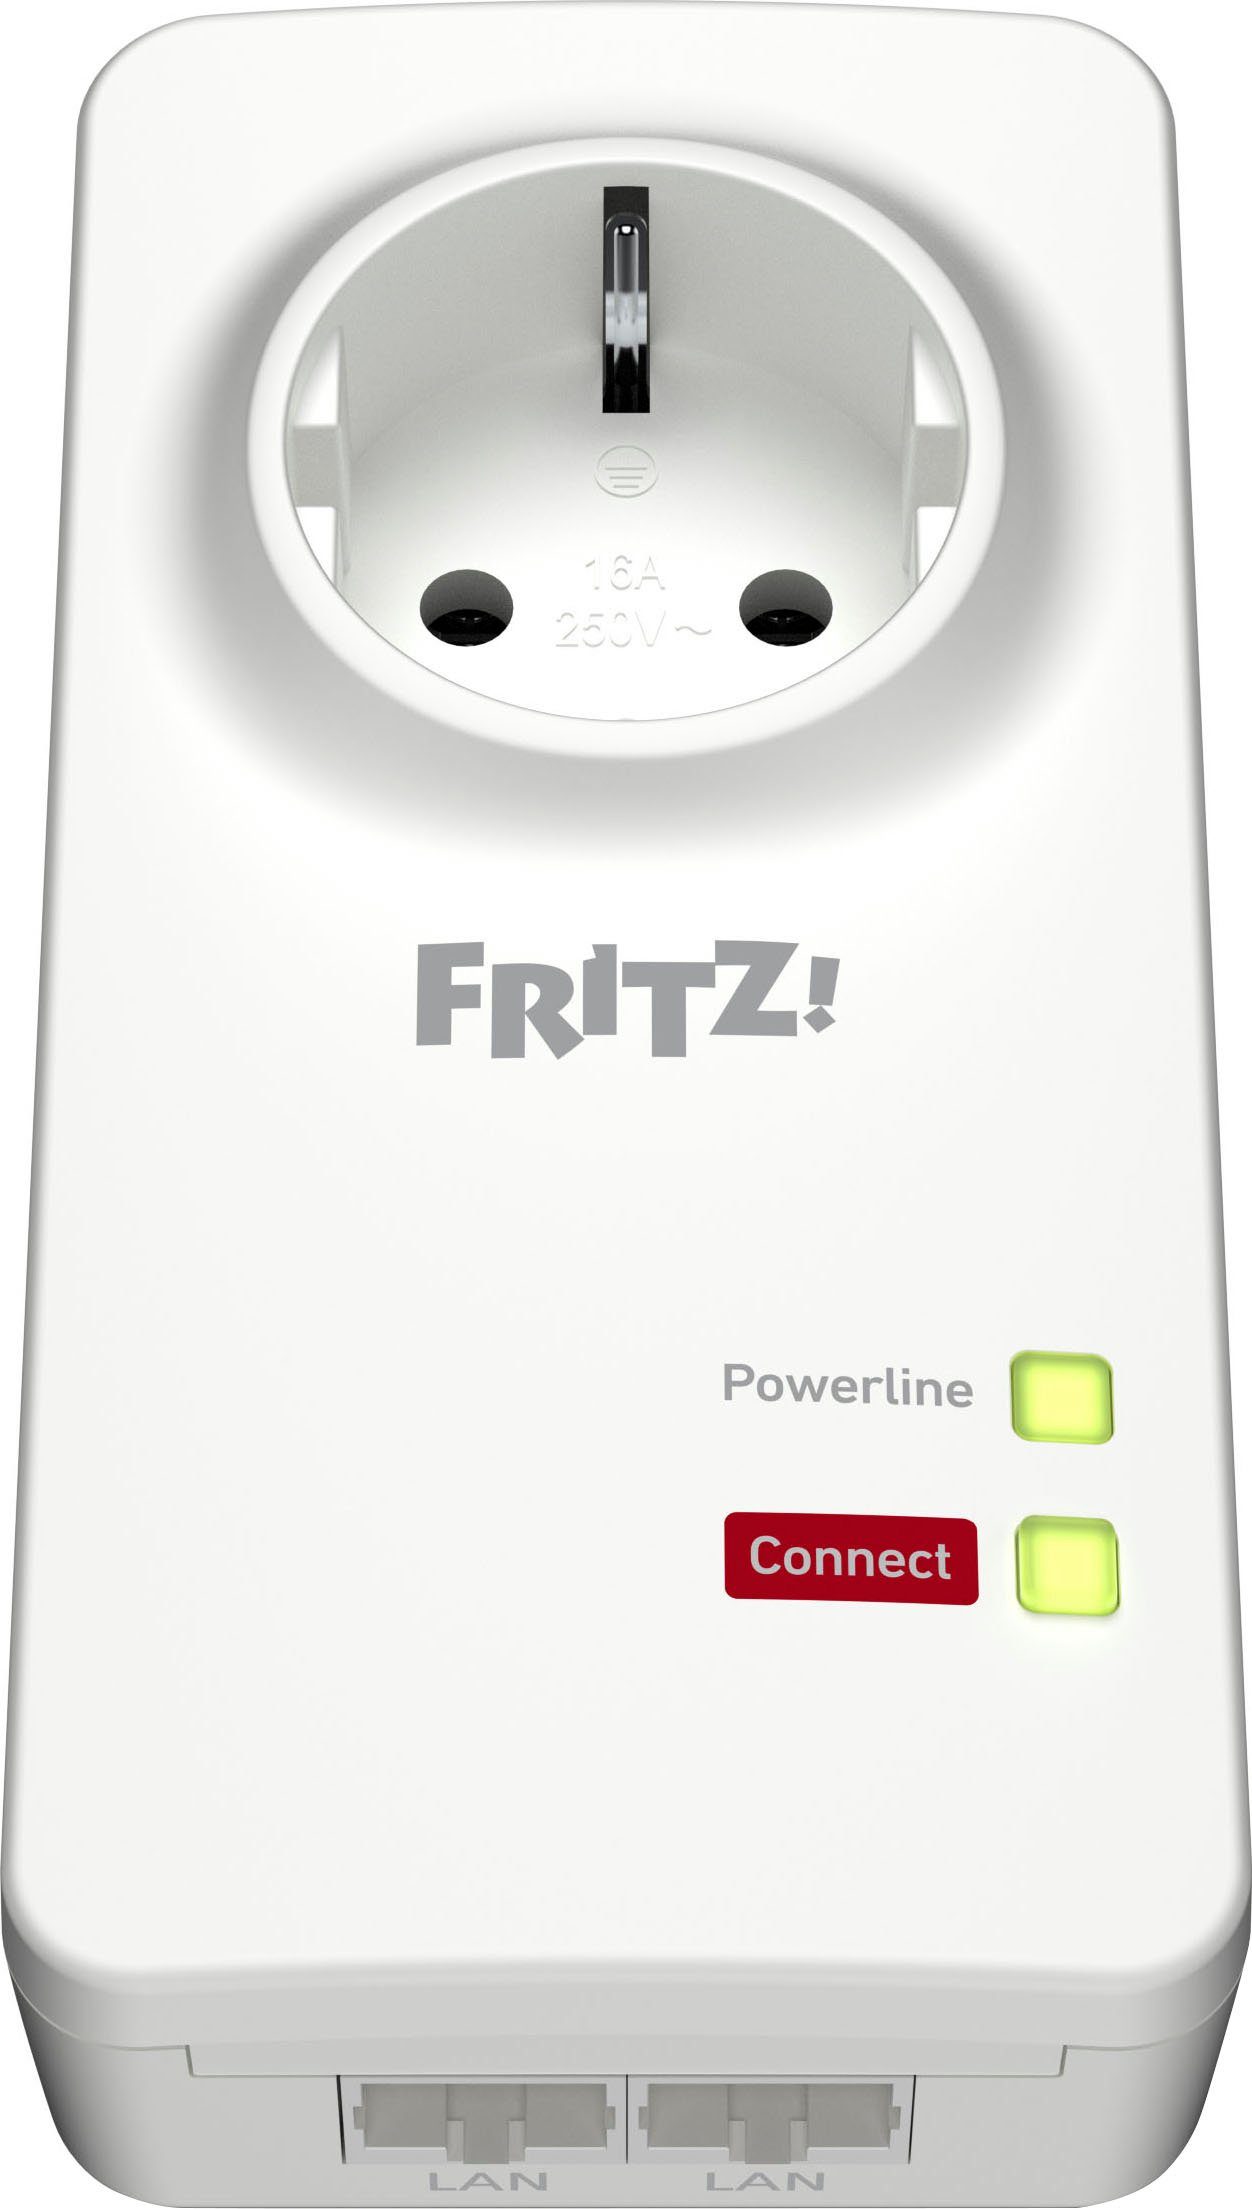 AVM FRITZ!Powerline 1220 LAN-Router